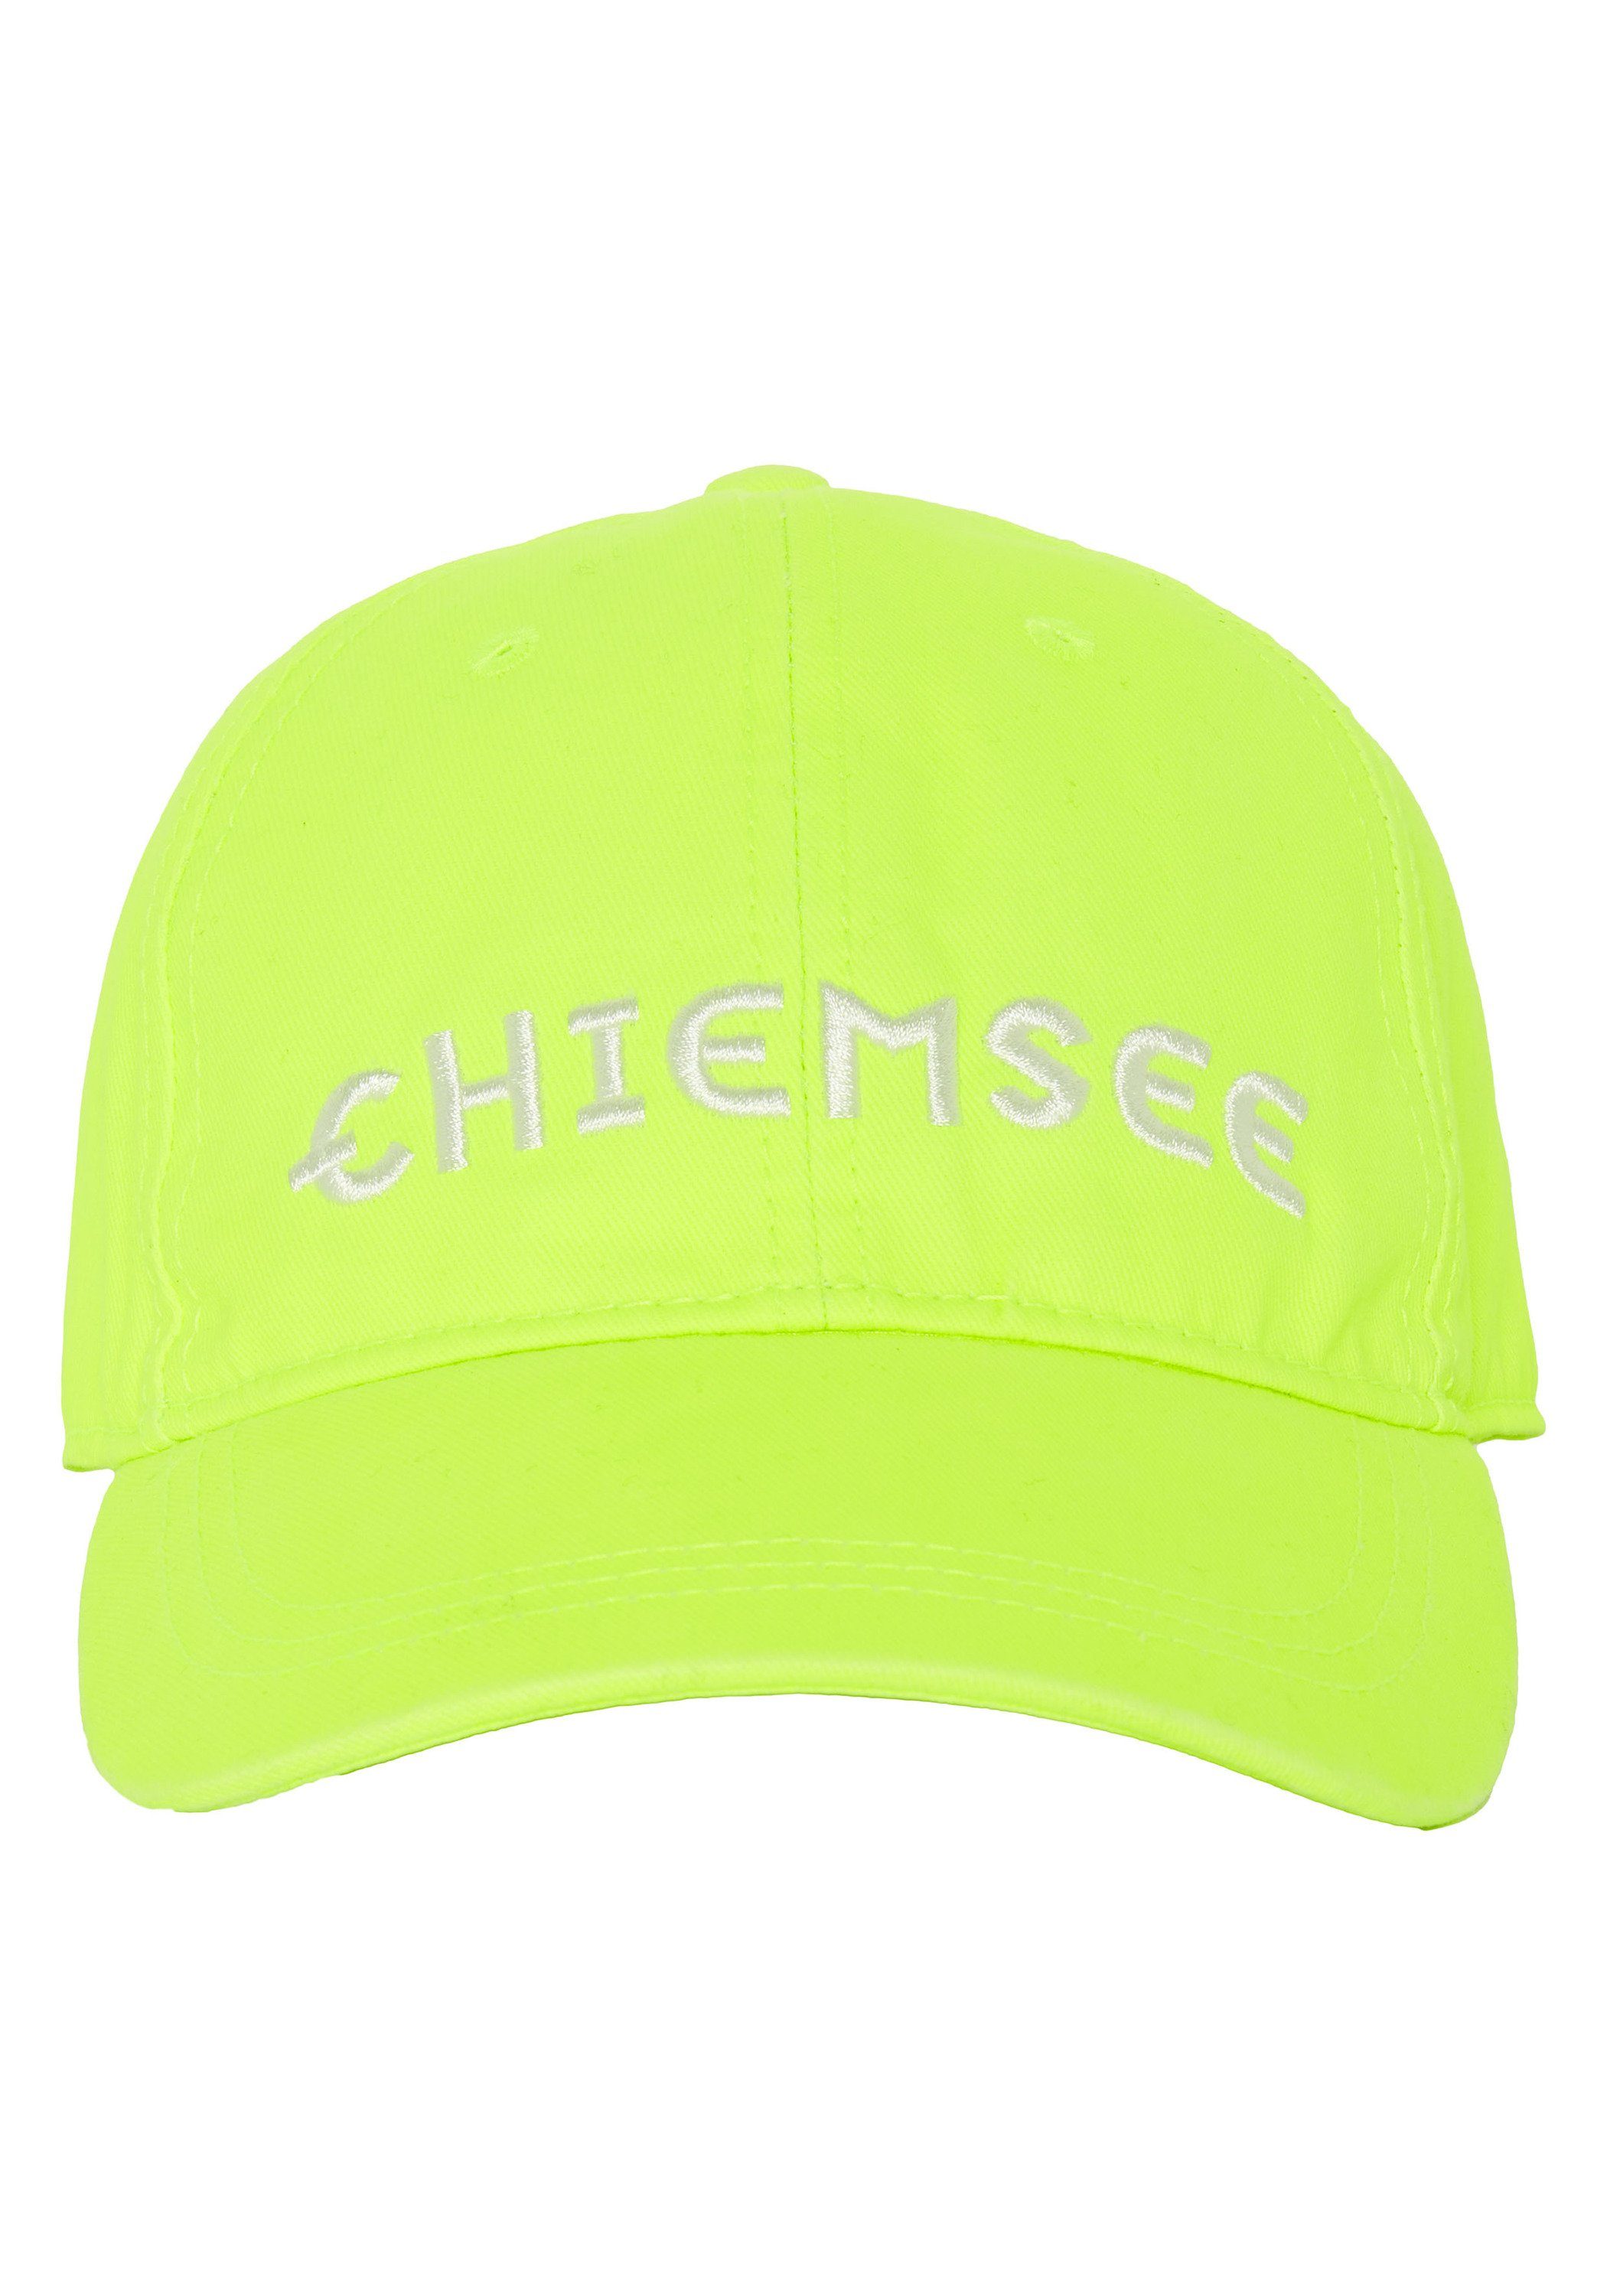 Chiemsee Baseball Cap Yellow aus Cap mit Unisex Safety Logo 13-0630 Baumwolle 1